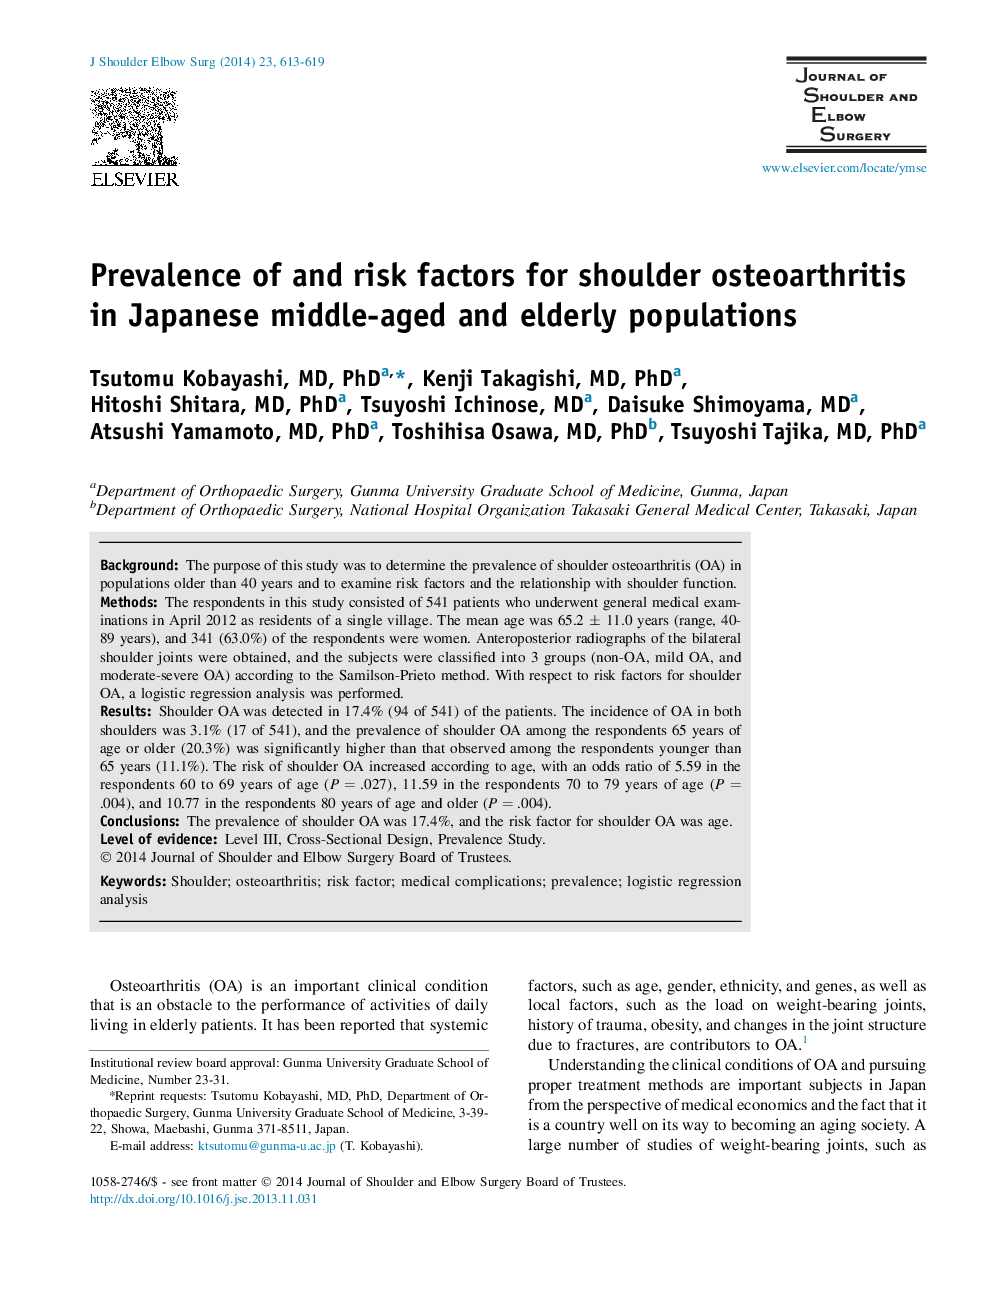 شیوع و عوامل خطر بیماری استئوآرتریت شانه در جمعیت های سالمندان و میان سالمندان ژاپن 